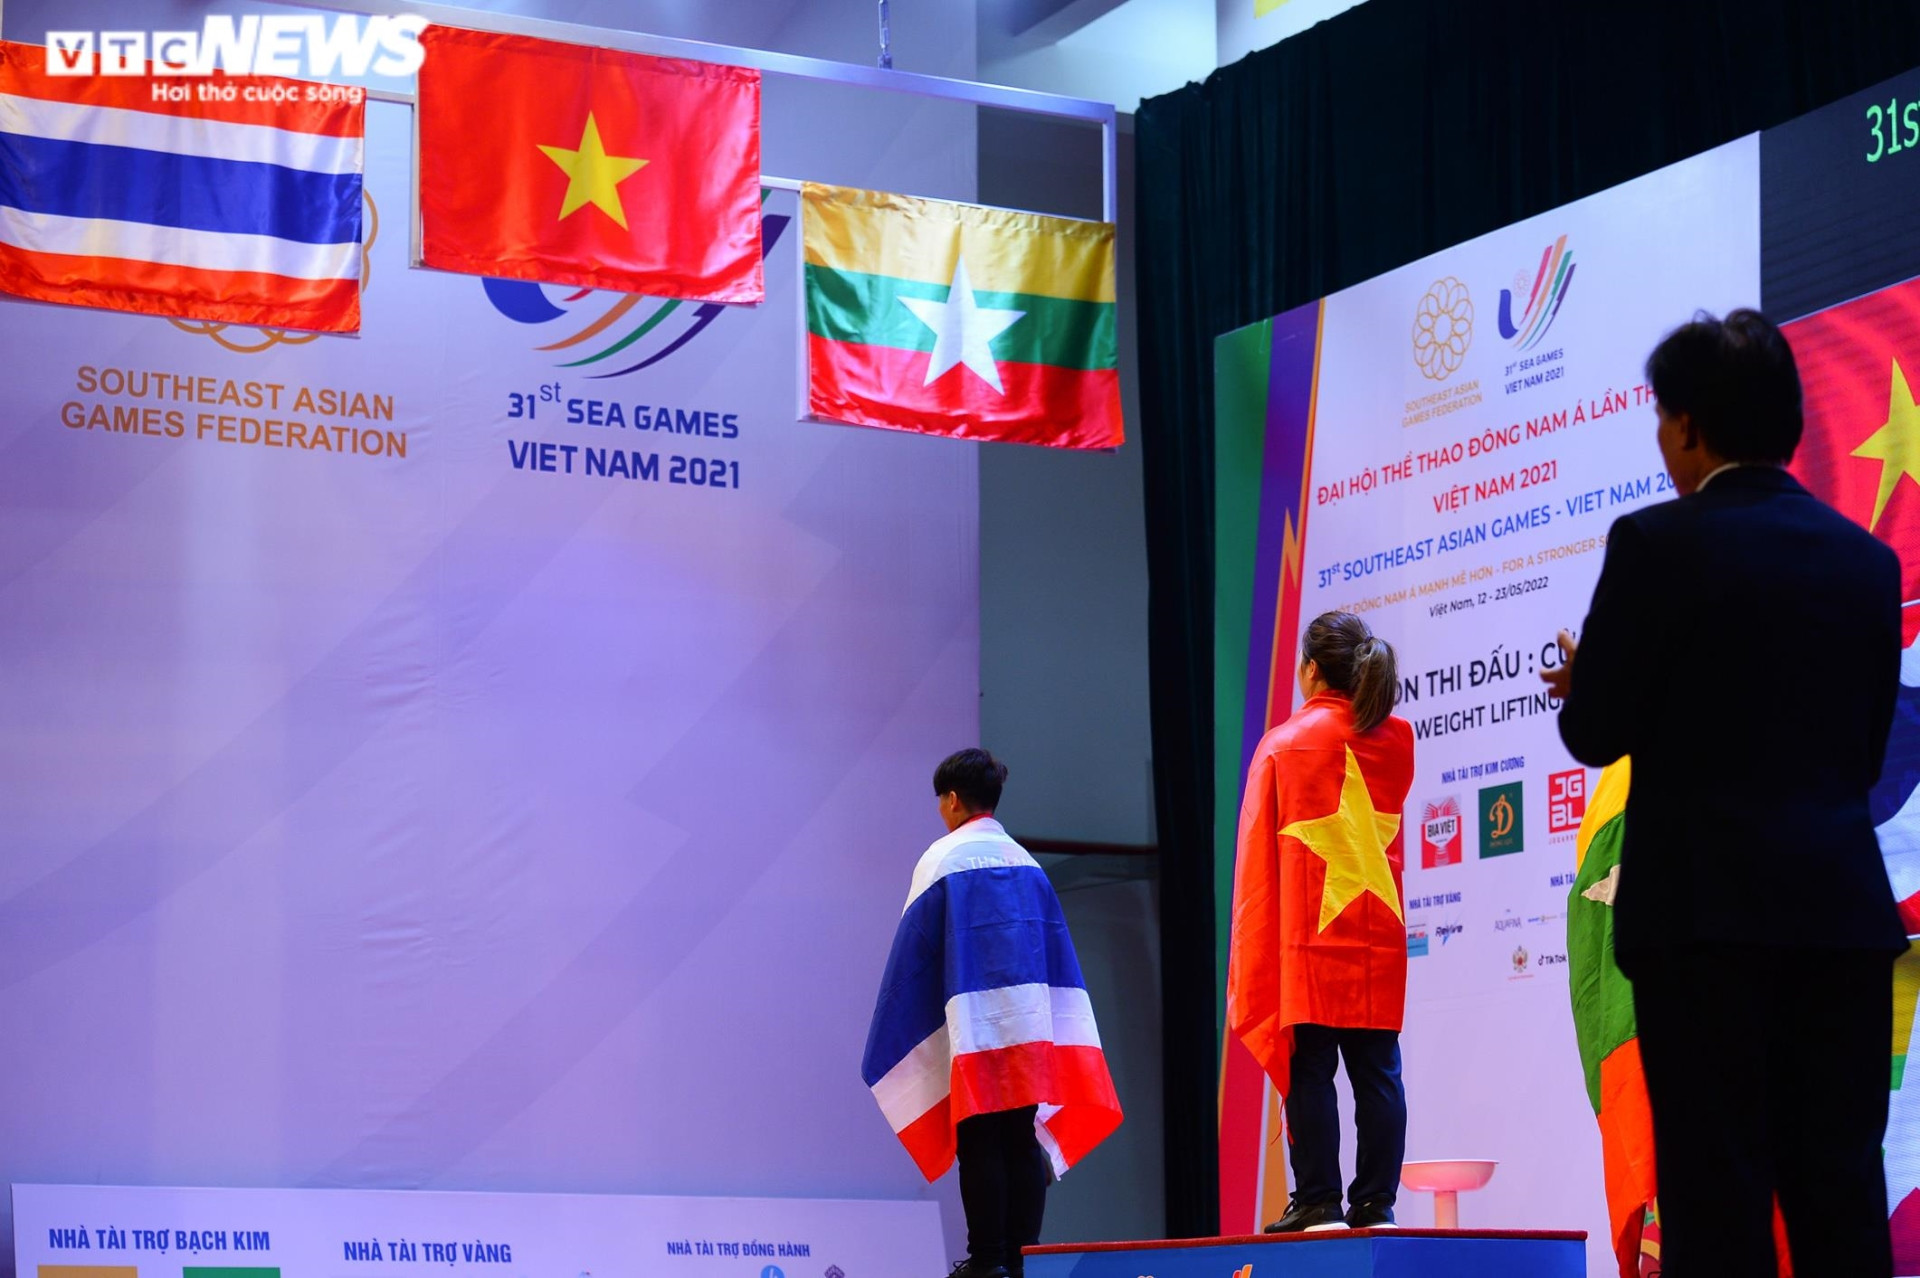 Đô cử Hoàng Thị Duyên vô đối nội dung 59kg, phá kỷ lục SEA Games - 9